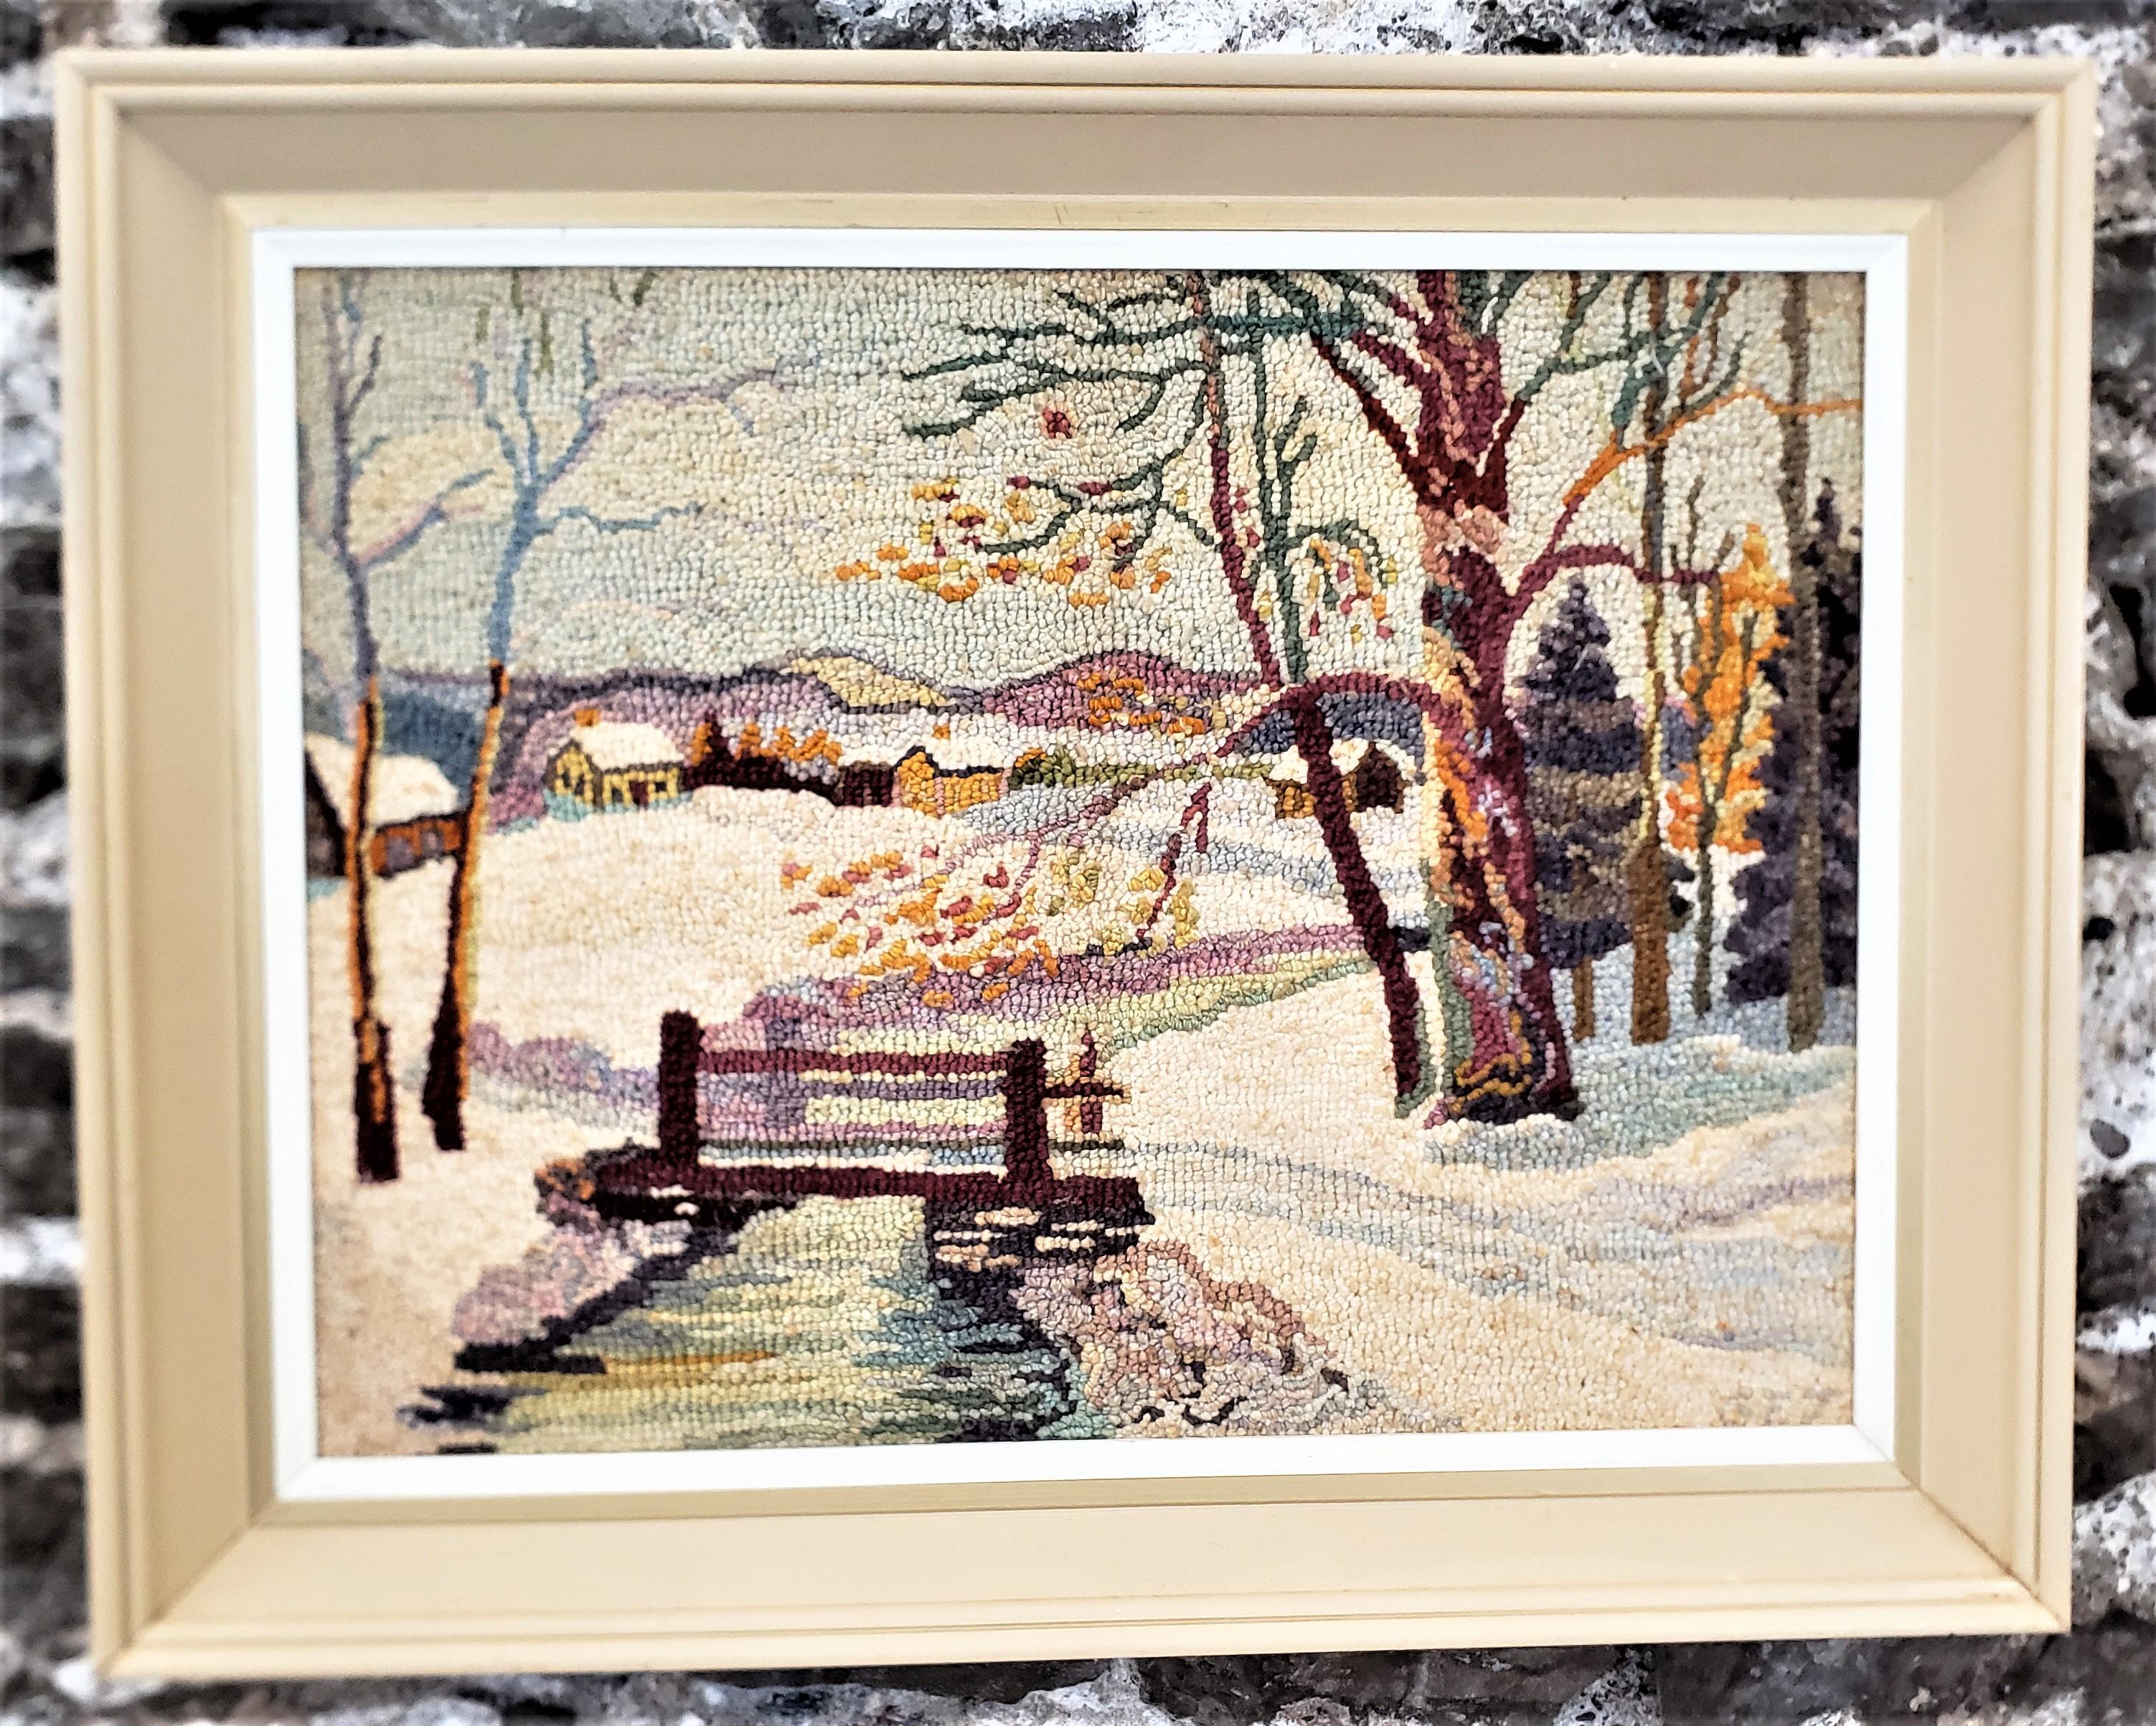 Ce tapis crocheté encadré a été réalisé par le célèbre George Edouard Tremblay du Québec (Canada) vers 1940 dans le style Folk Art de l'époque. Le tapis ou la natte est fait de laine sur de la toile de jute qui a été montée sur une planche de